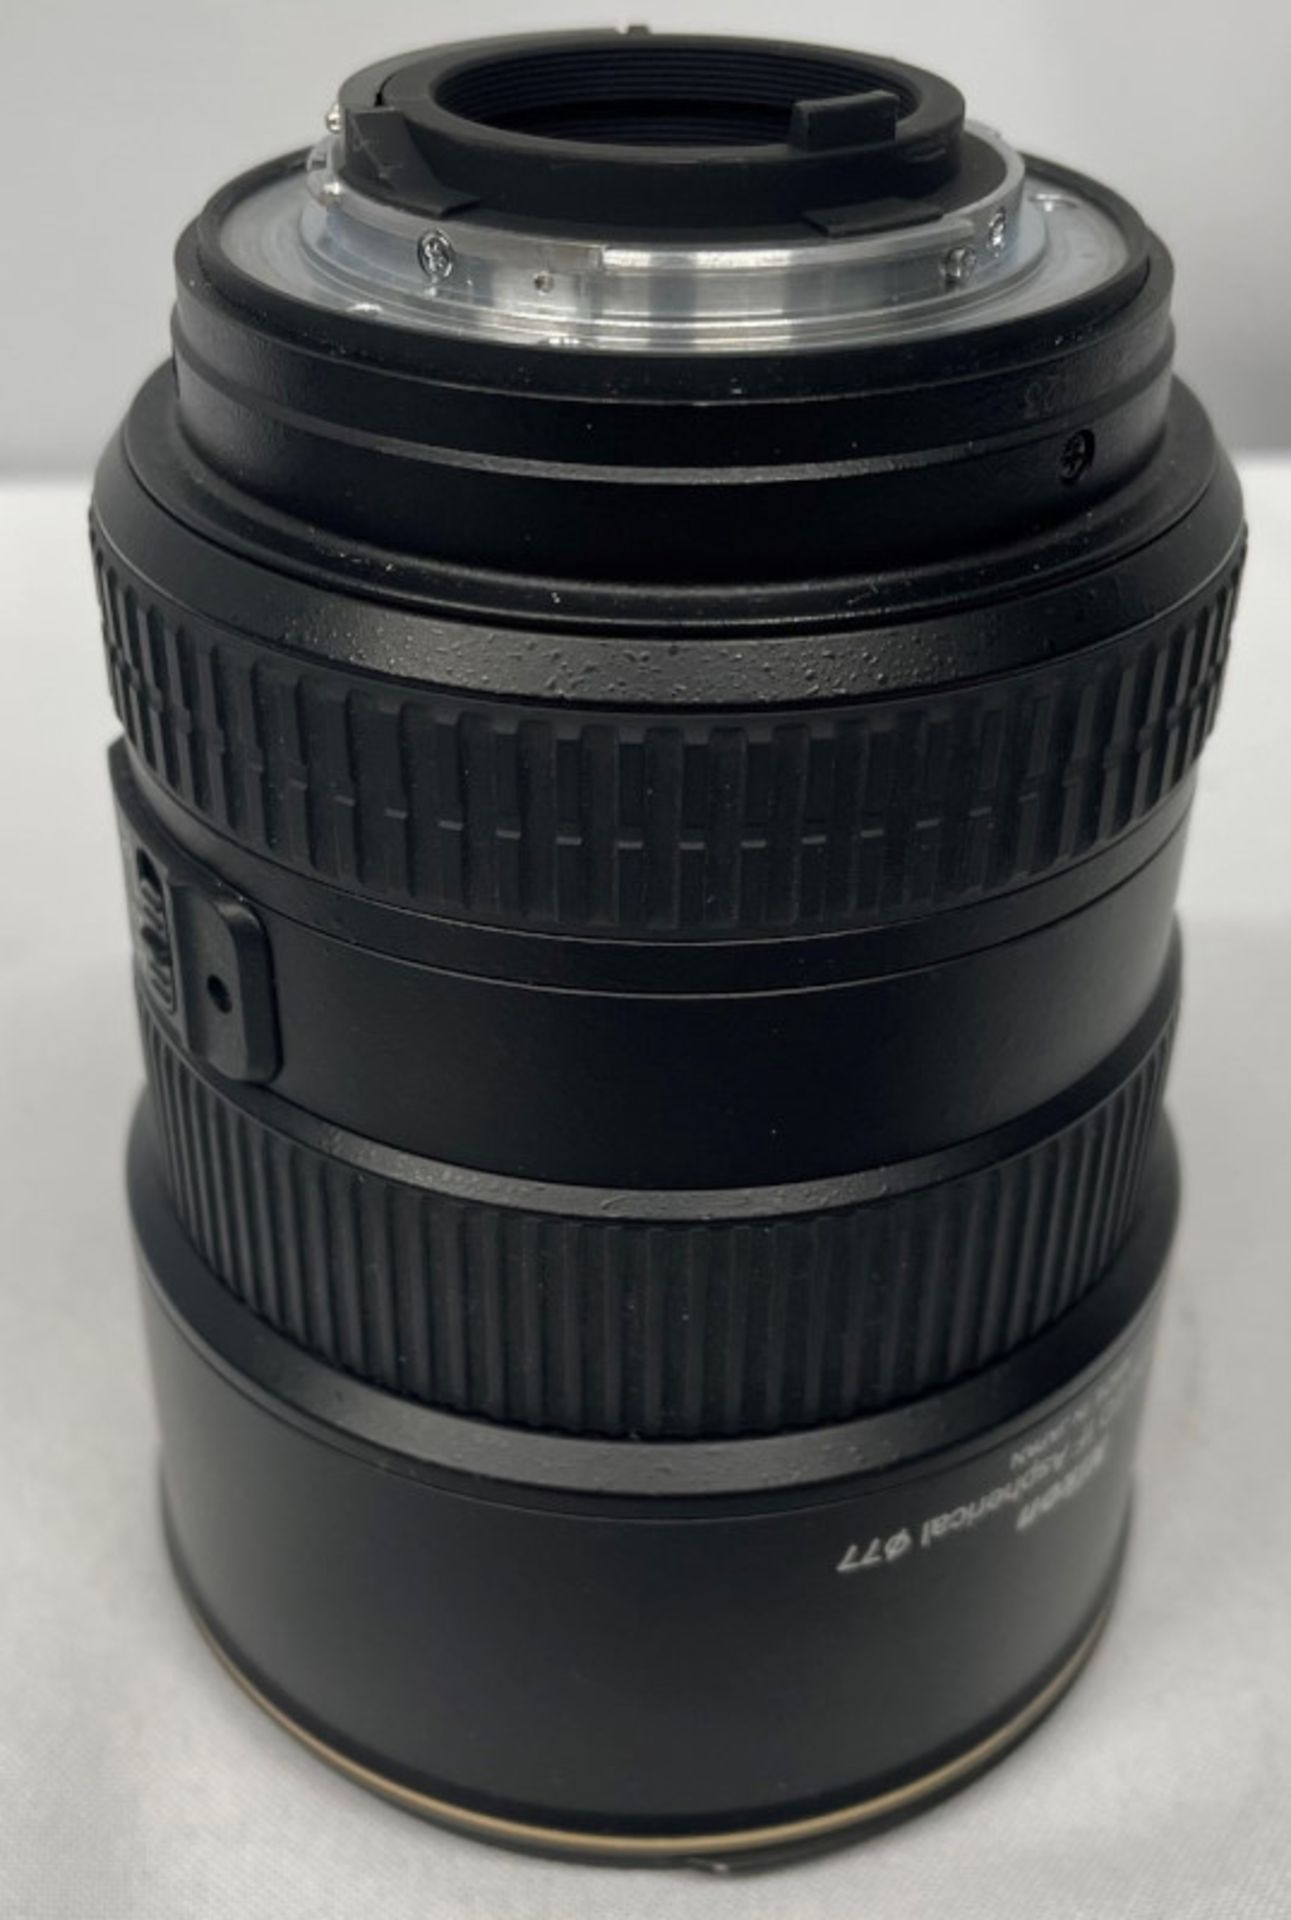 Nikon DX AF-S Nikkor 17-55mm - 1:2.8G ED Lens - Serial No. 331423 & Nikon HB-31 Lens Hood - Image 3 of 6